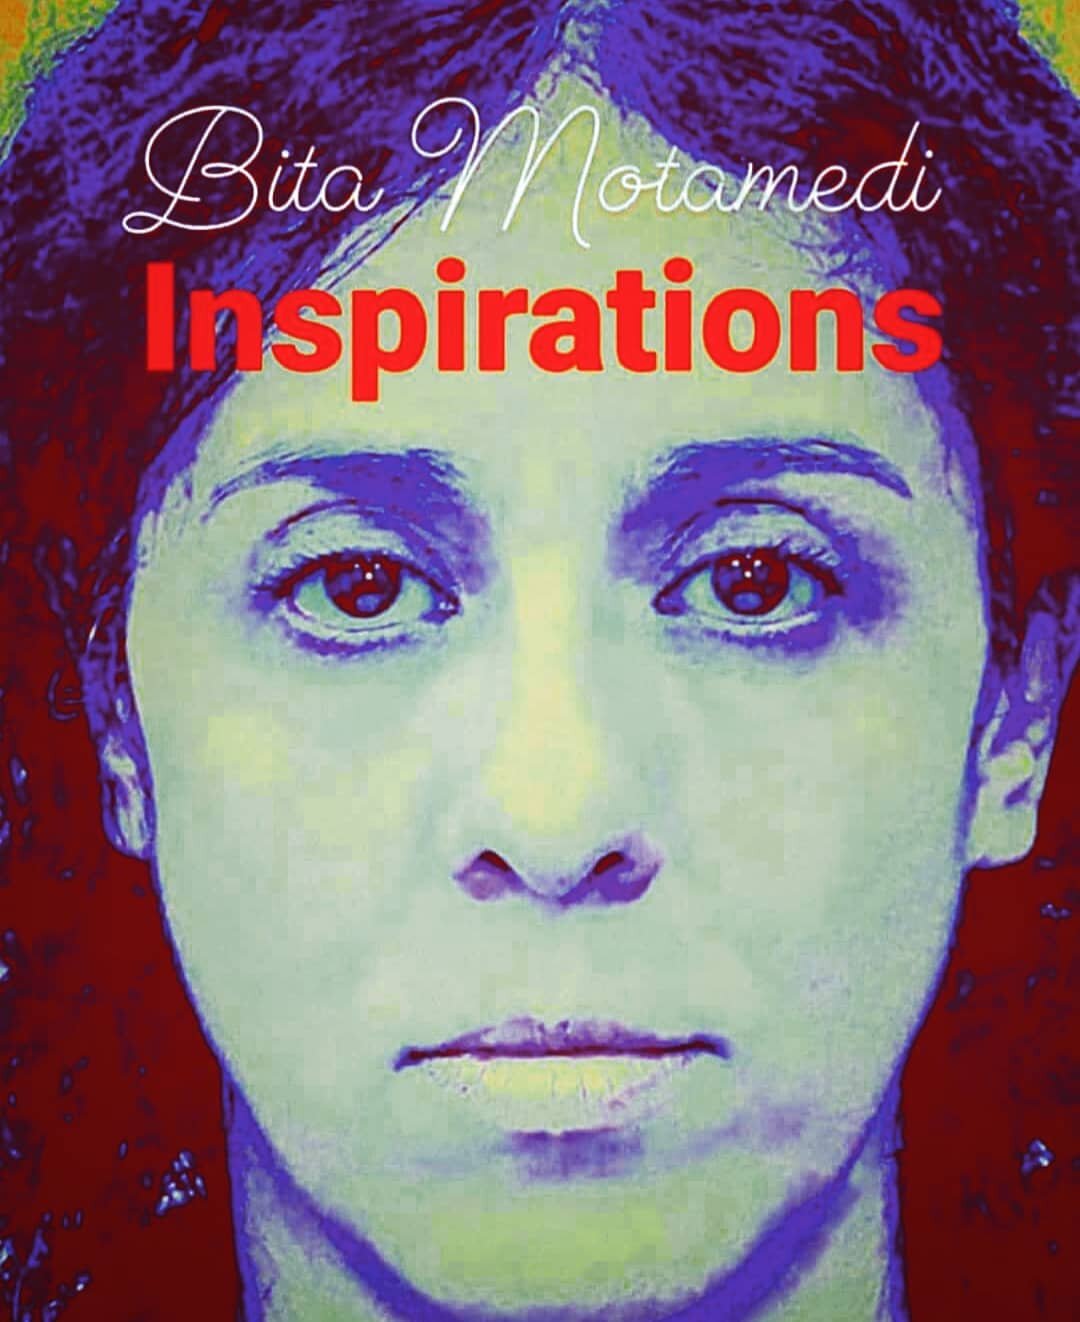 Bita Motamedi, Inspirations
bitamotamedi.com